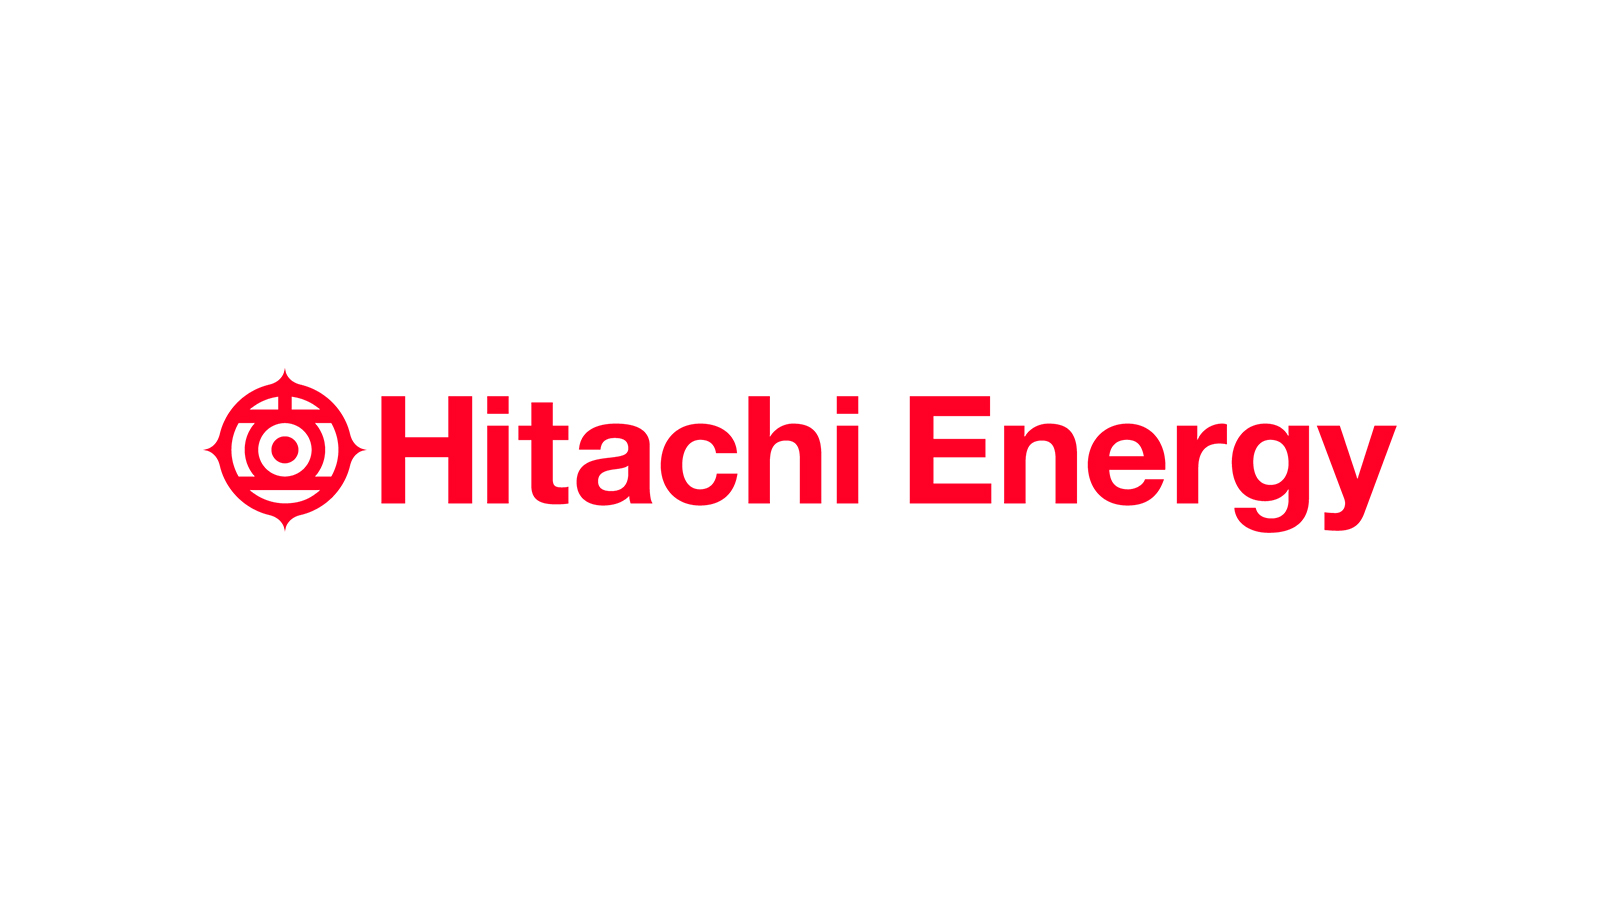 HITACHI ENERGY INTERNSHIP PROGRAM 2022